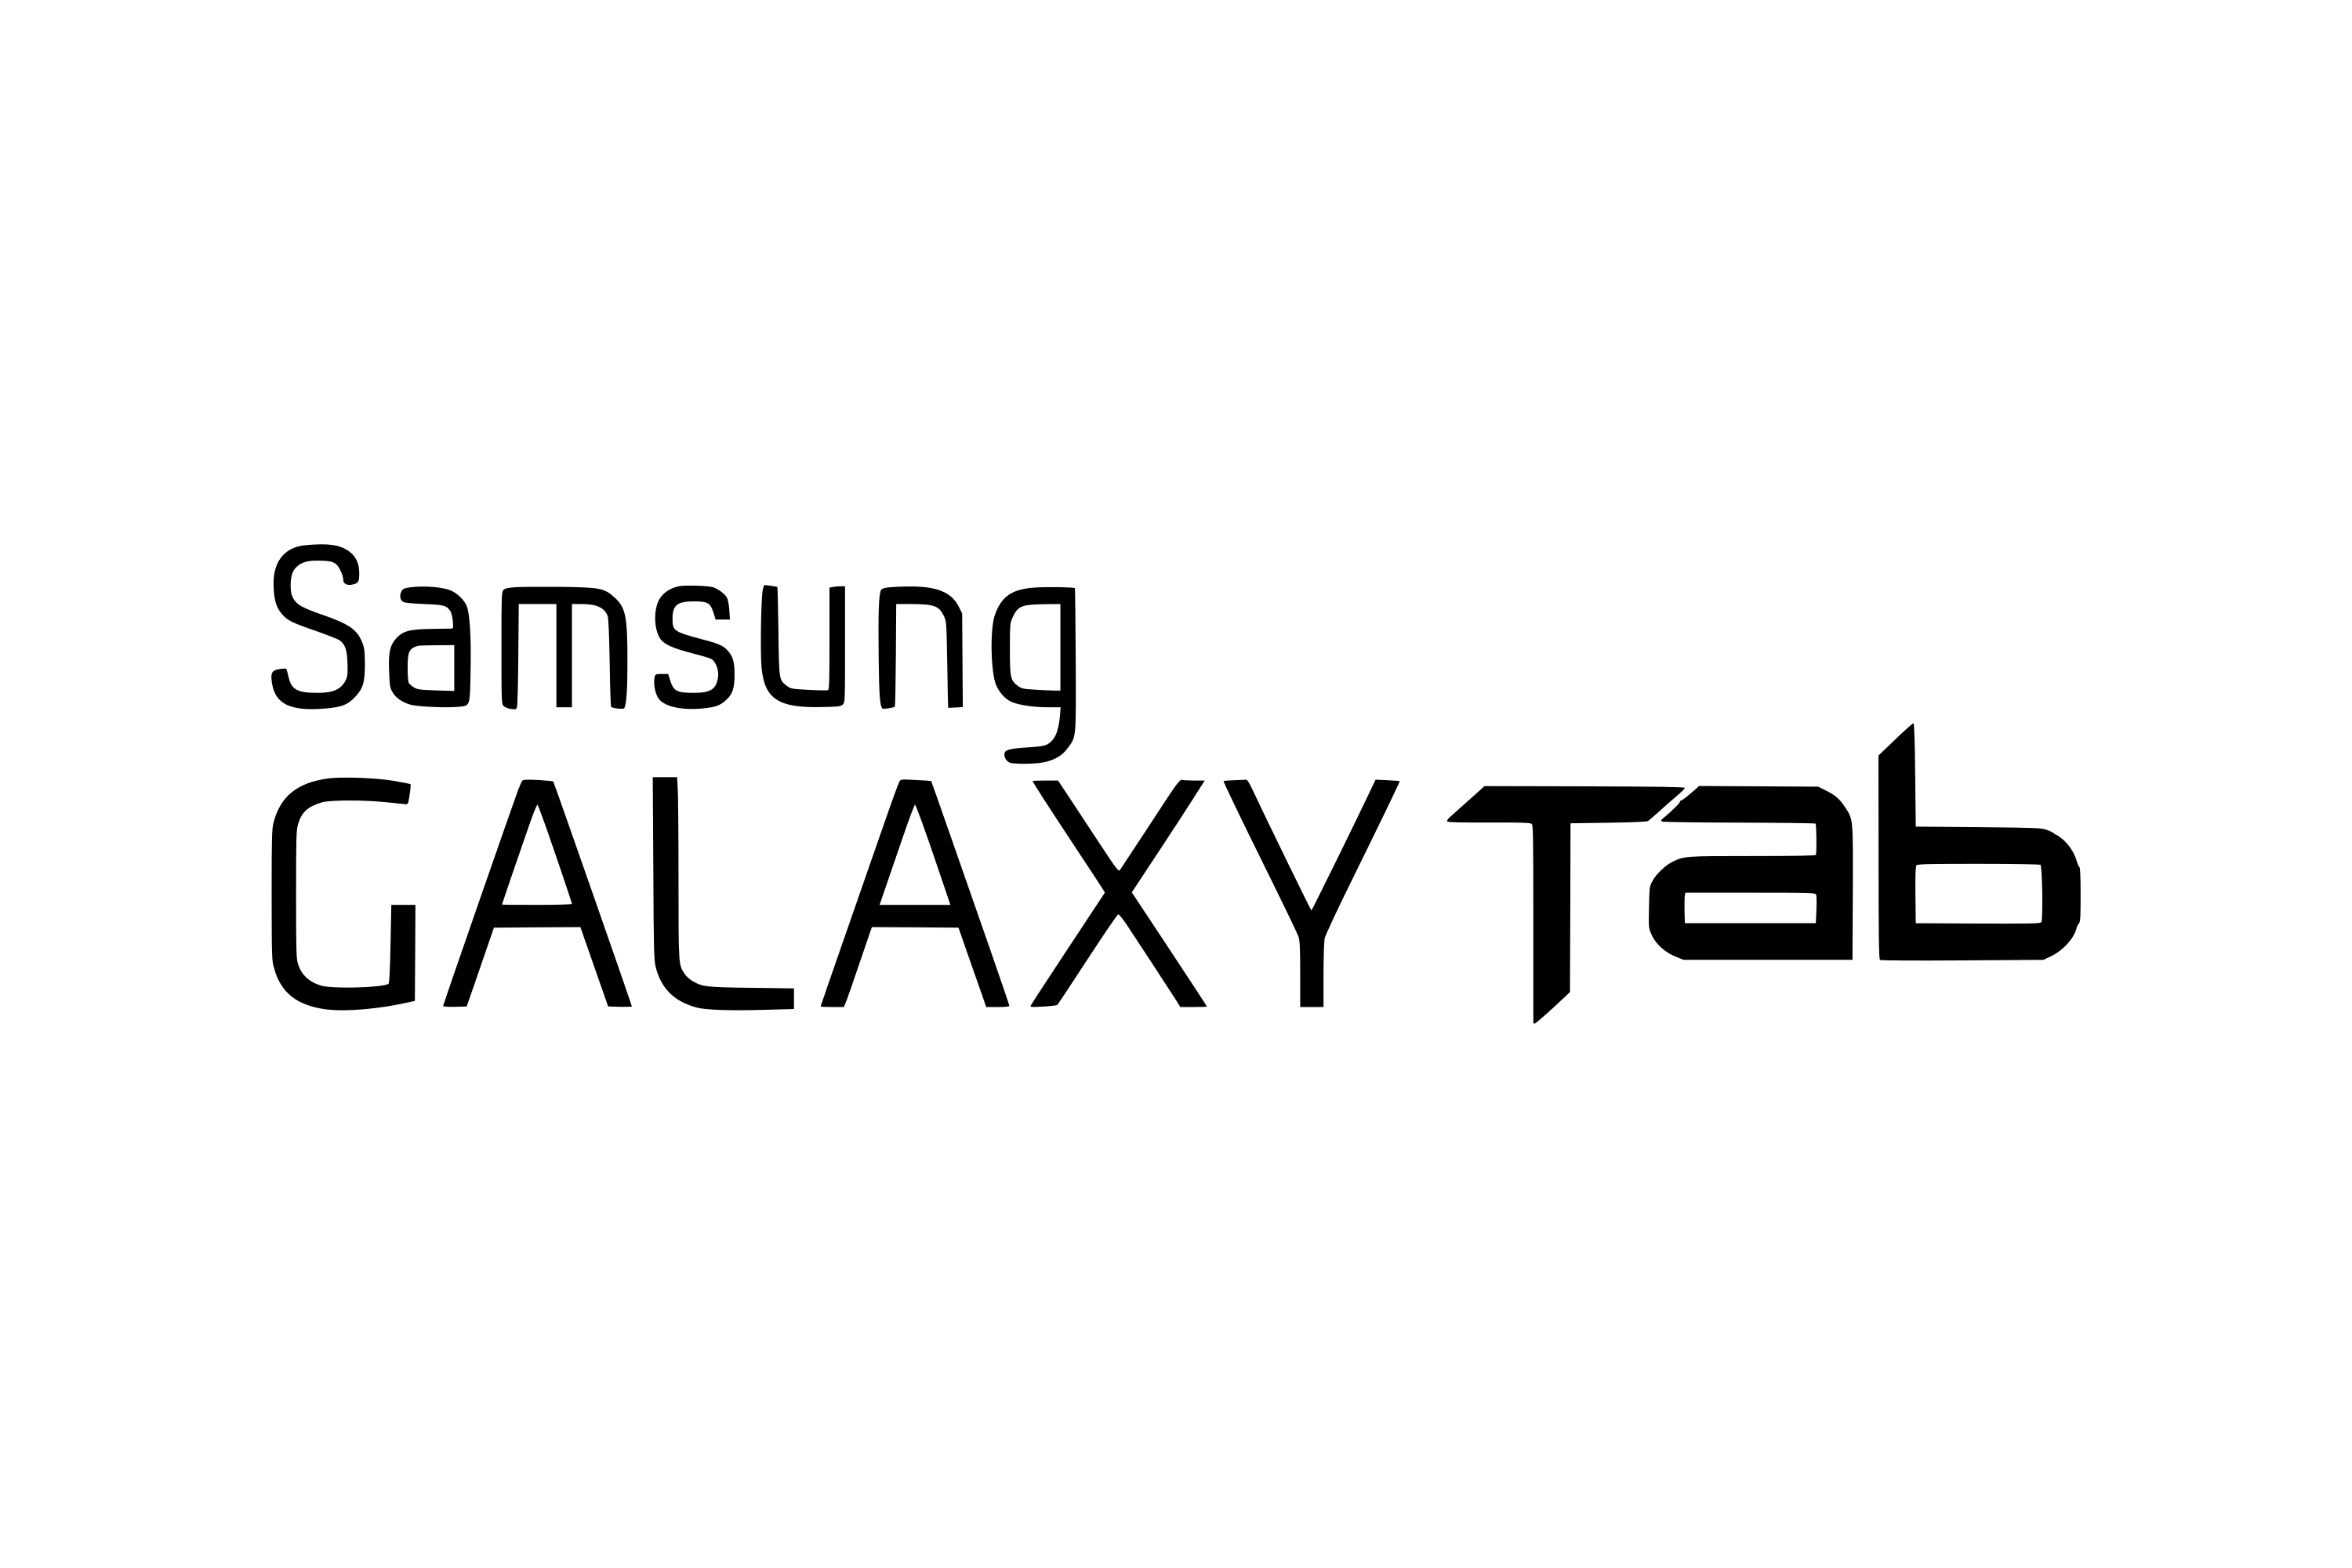 Samsung Galaxy Tab 4 Education Logo